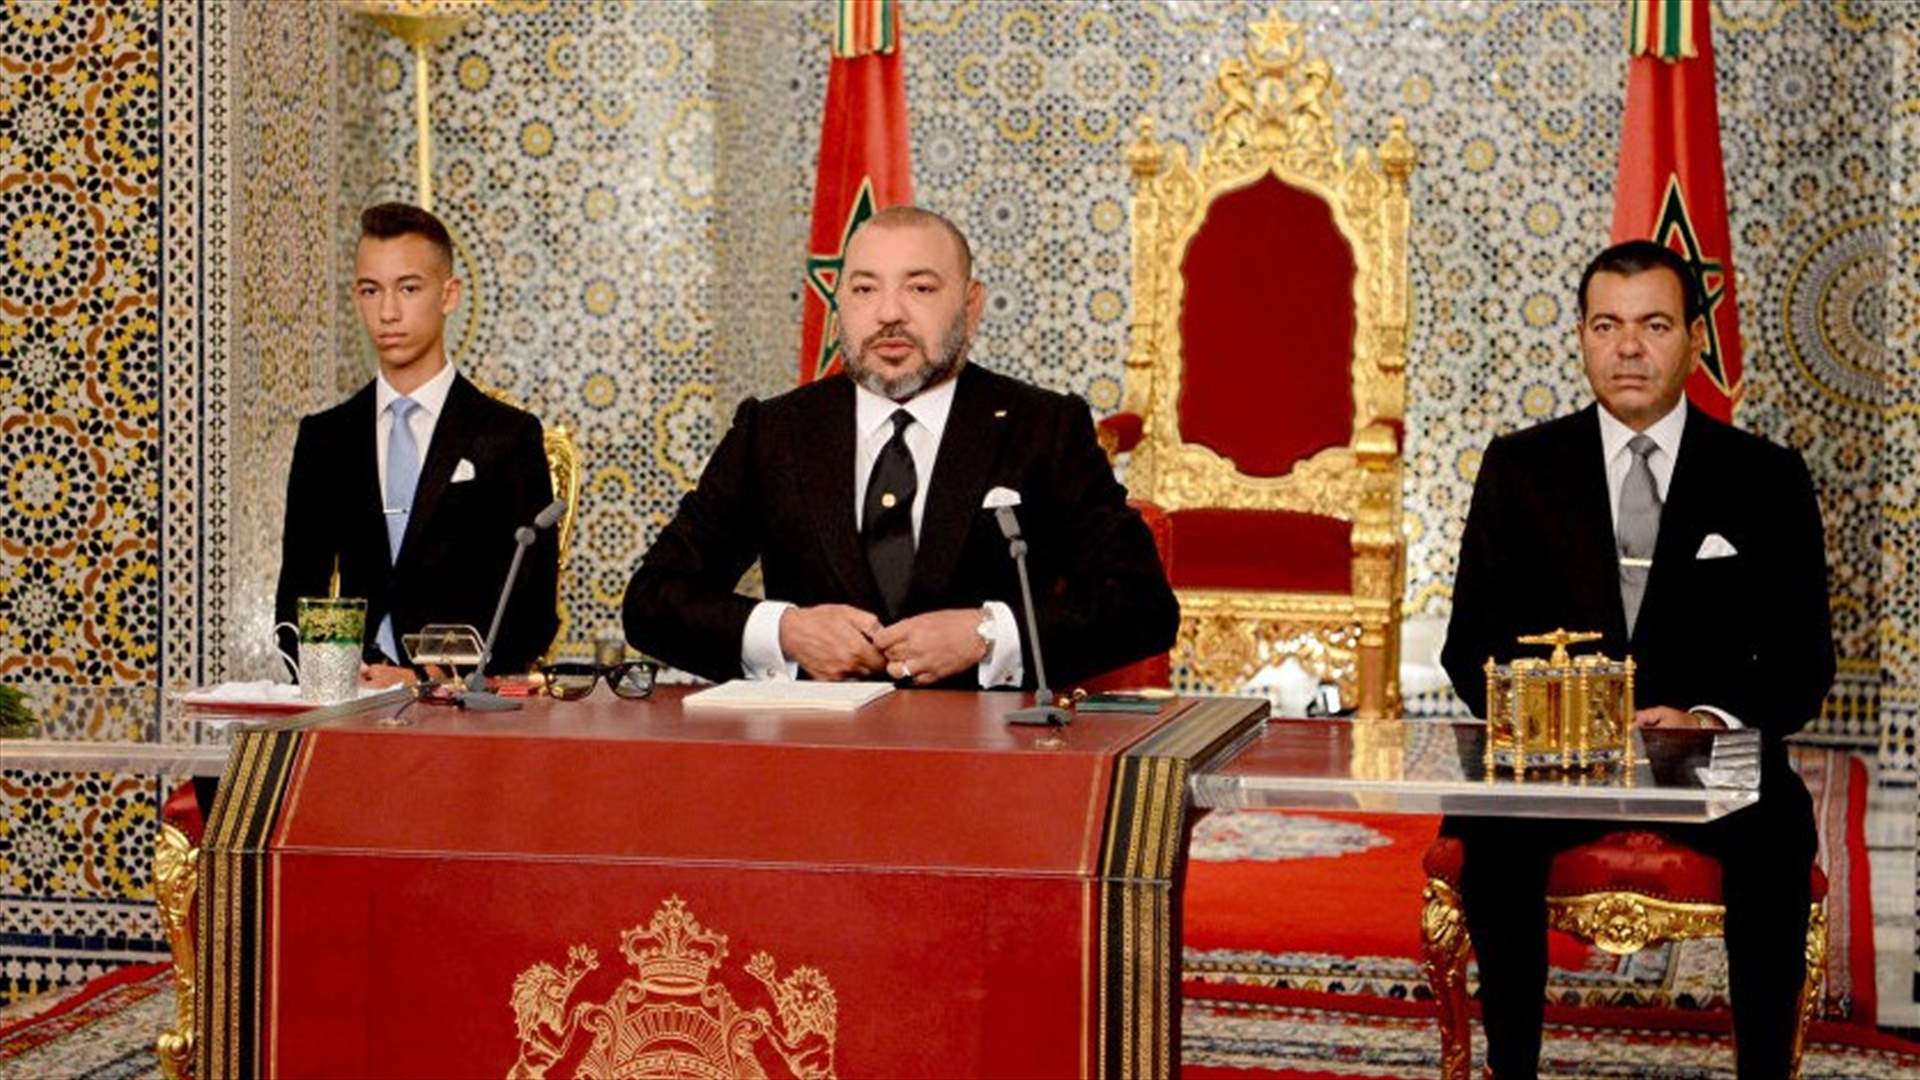 العاهل المغربي يعين اربعة وزراء